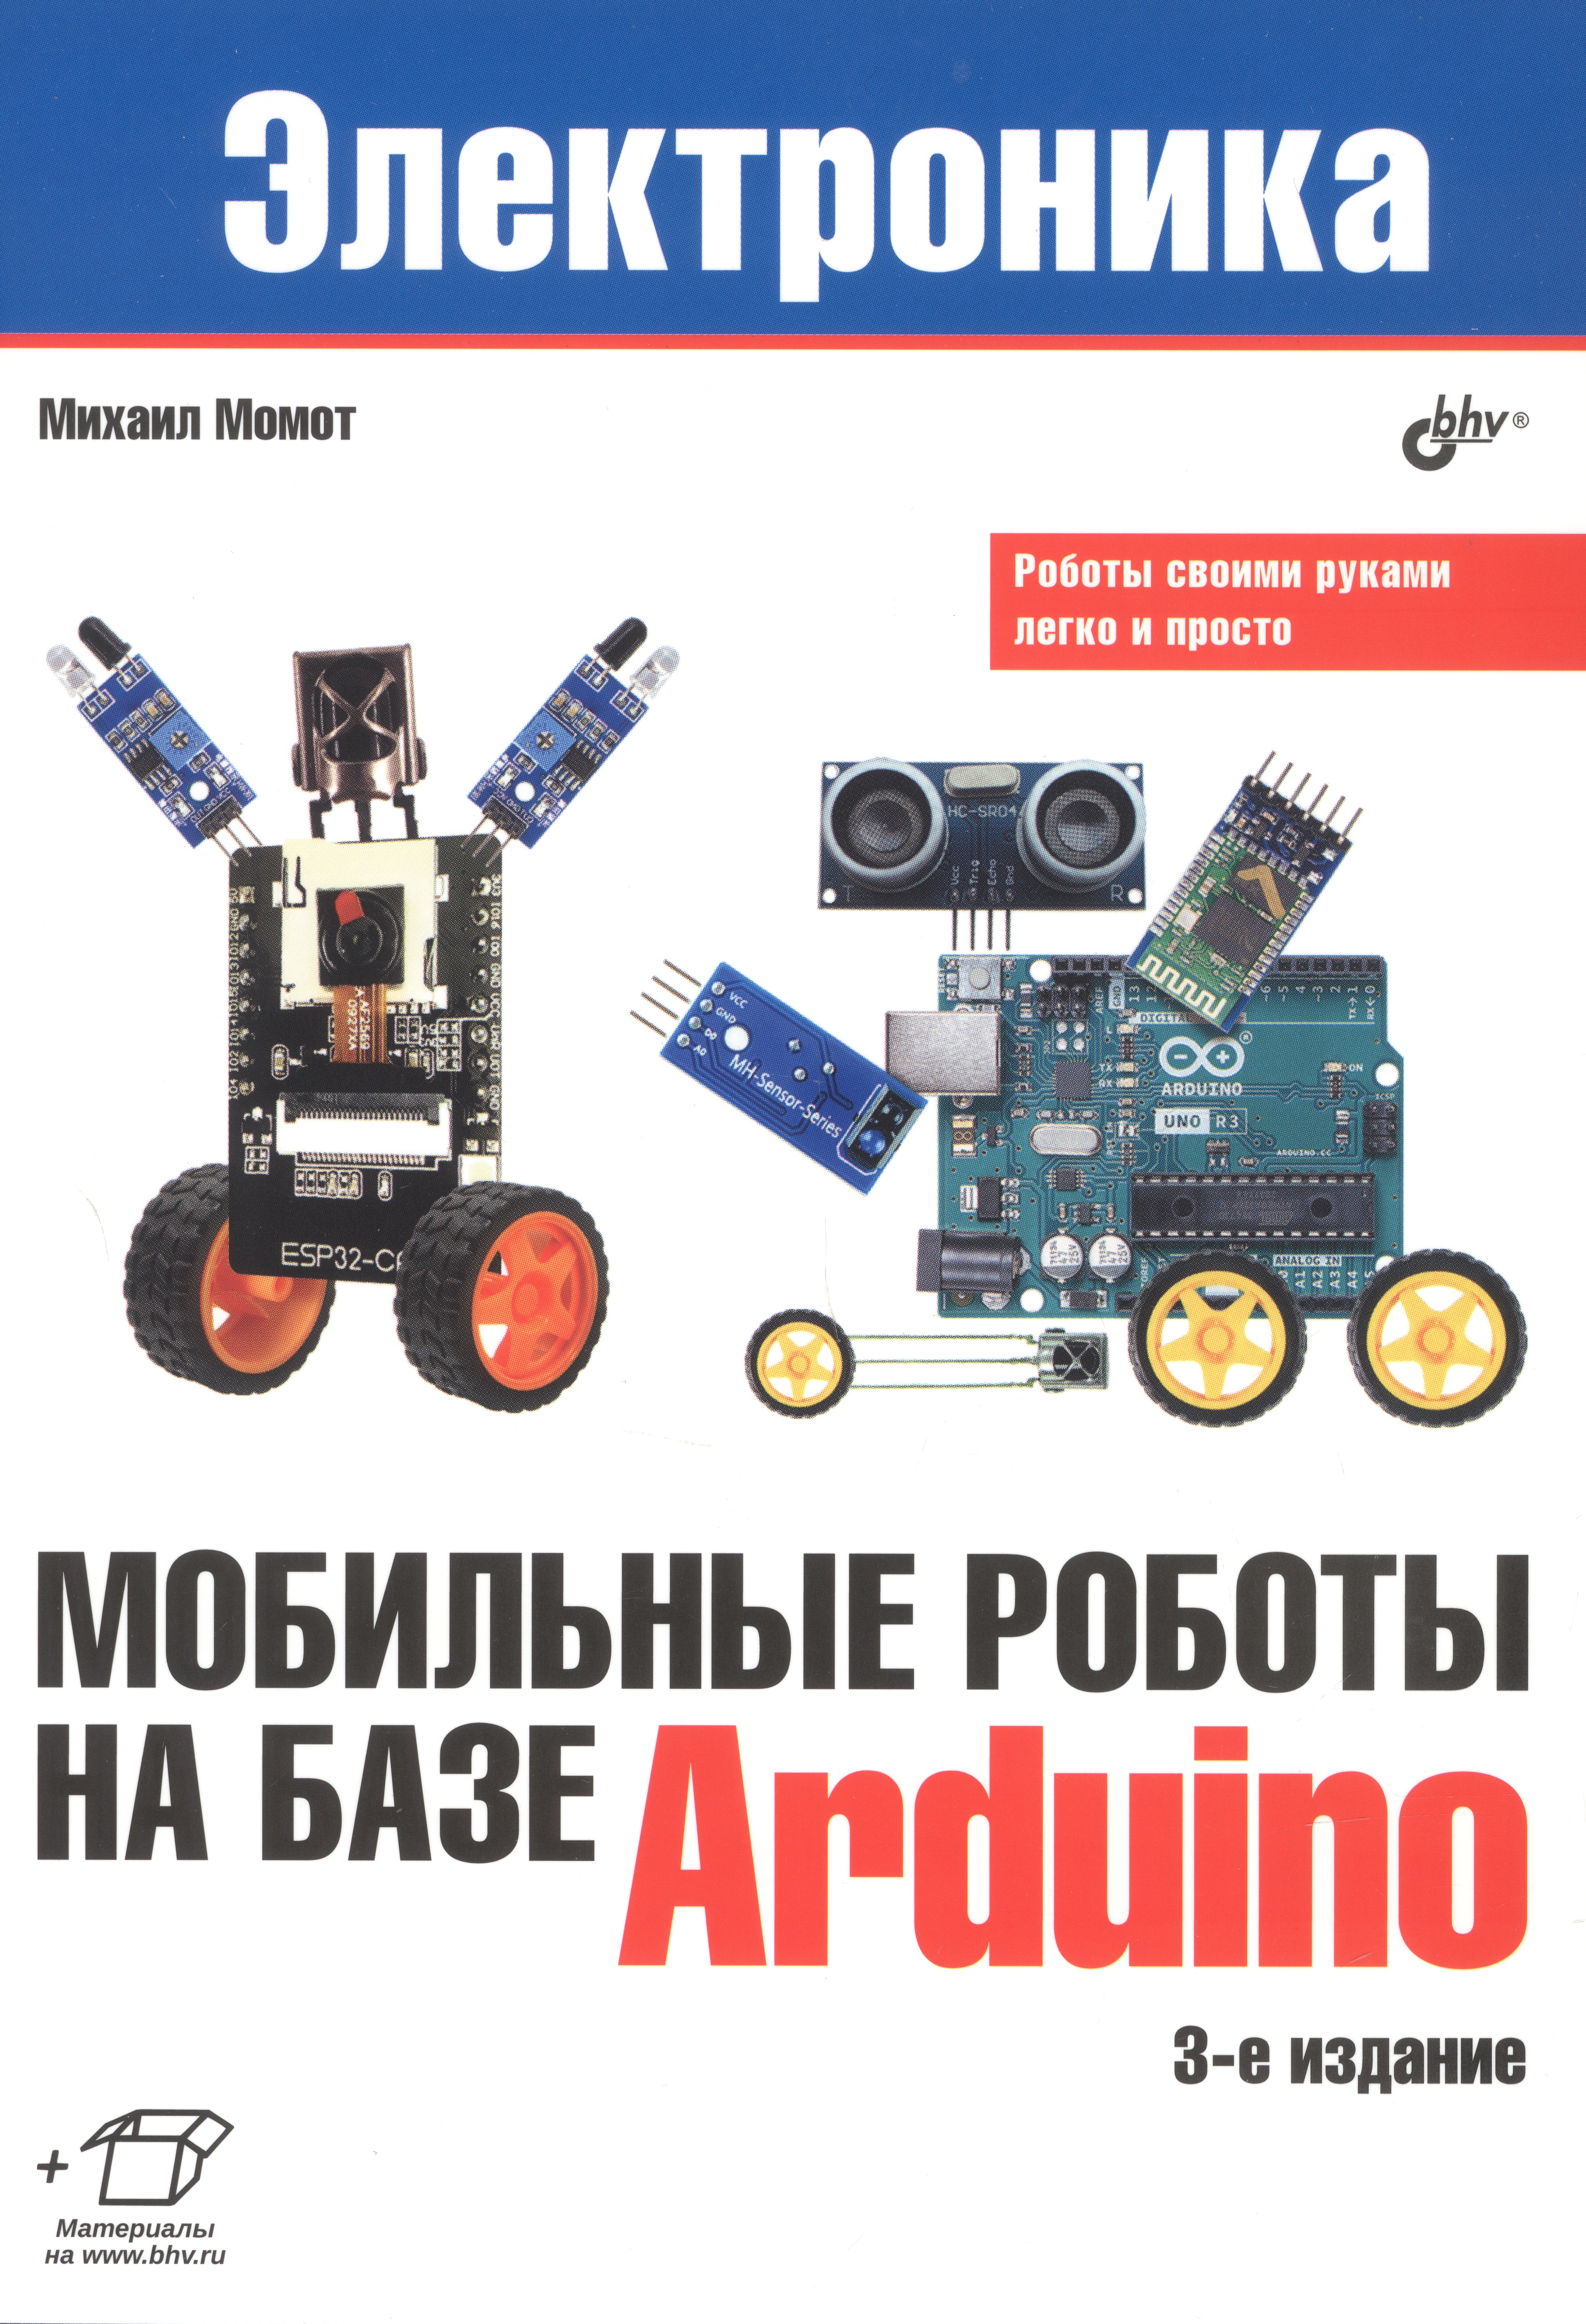 Момот Михаил Викторович - Мобильные роботы на базе Arduino. 3-е издание